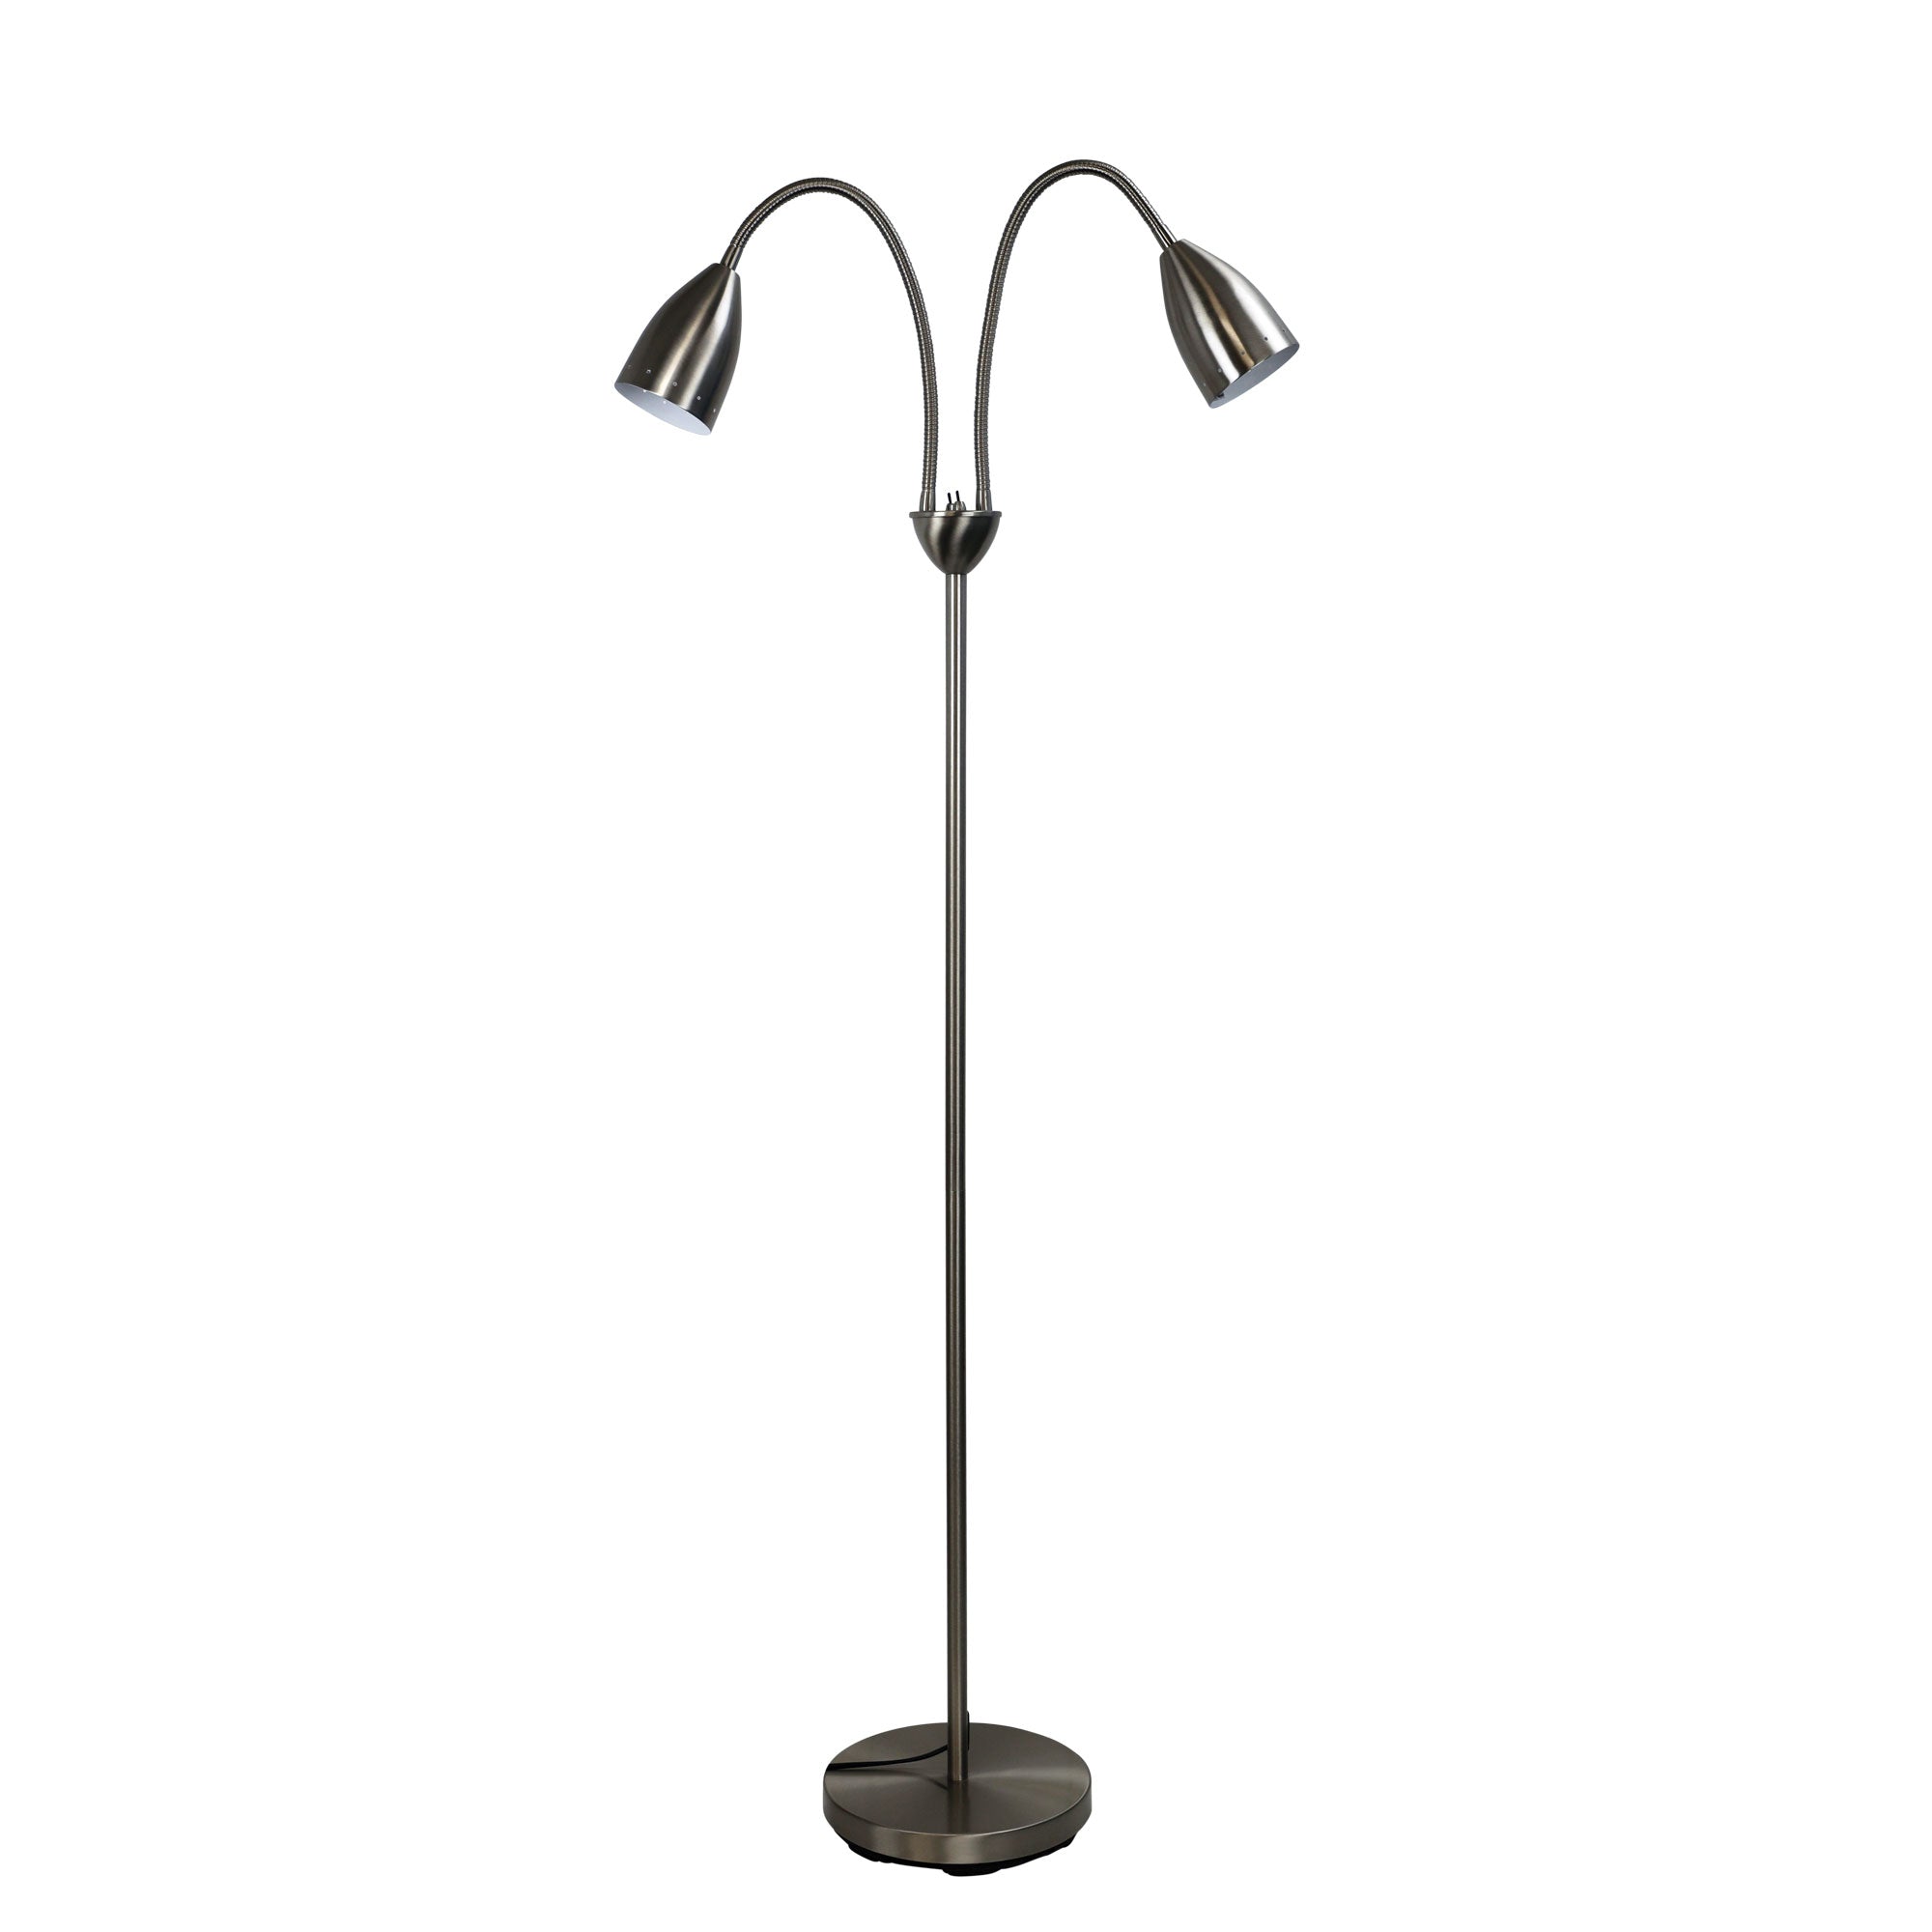 Stan 2 Light Floor Lamp Brushed Chrome - SL98822BC